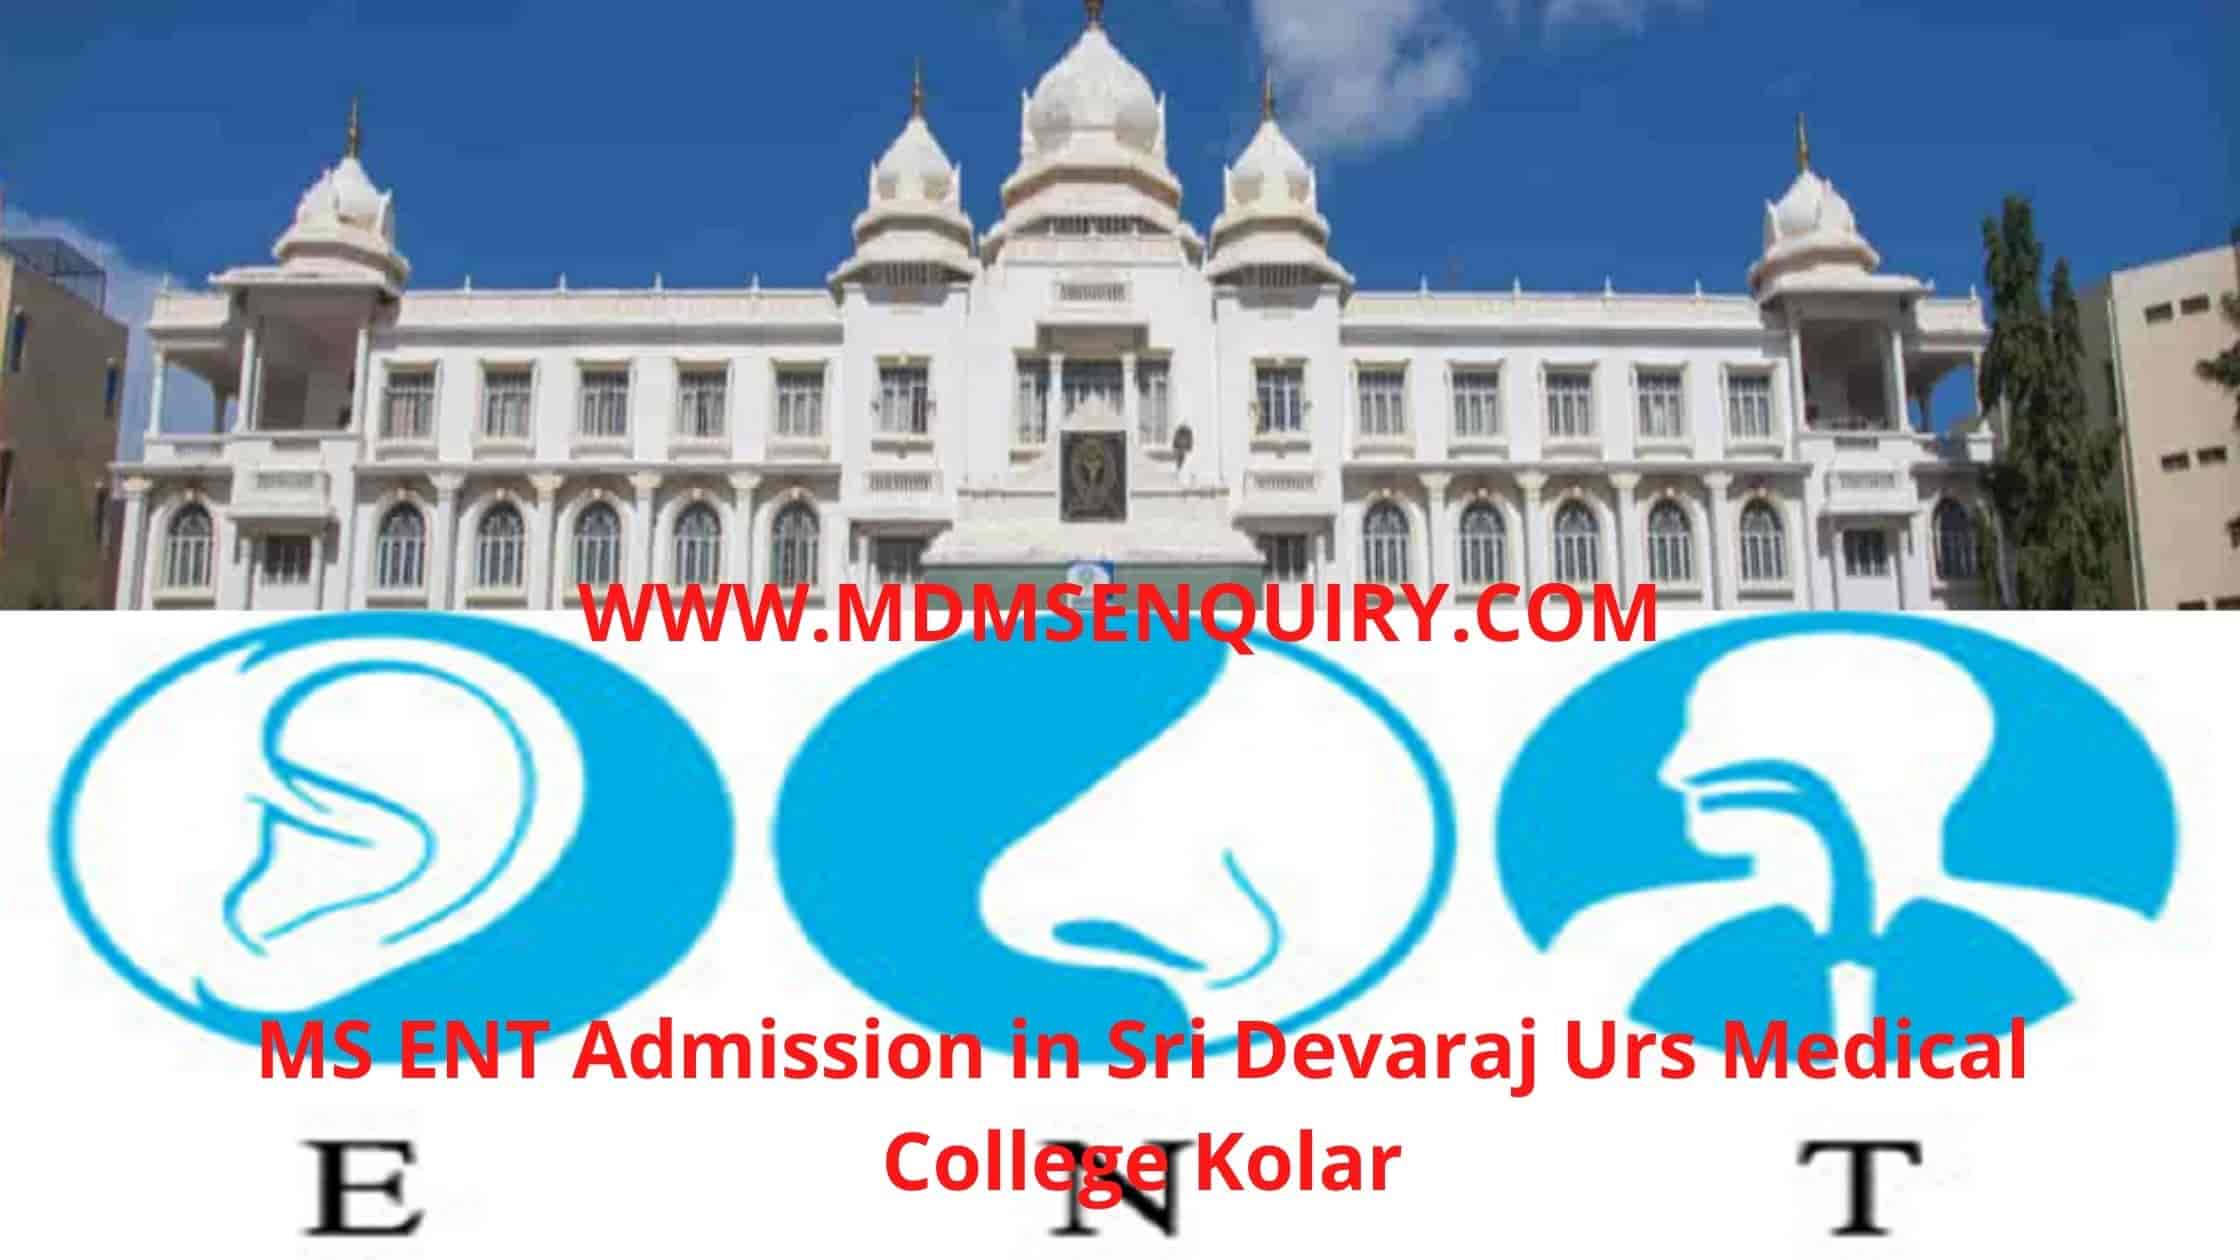 MS ENT Admission in Sri Devaraj Urs Medical College Kolar